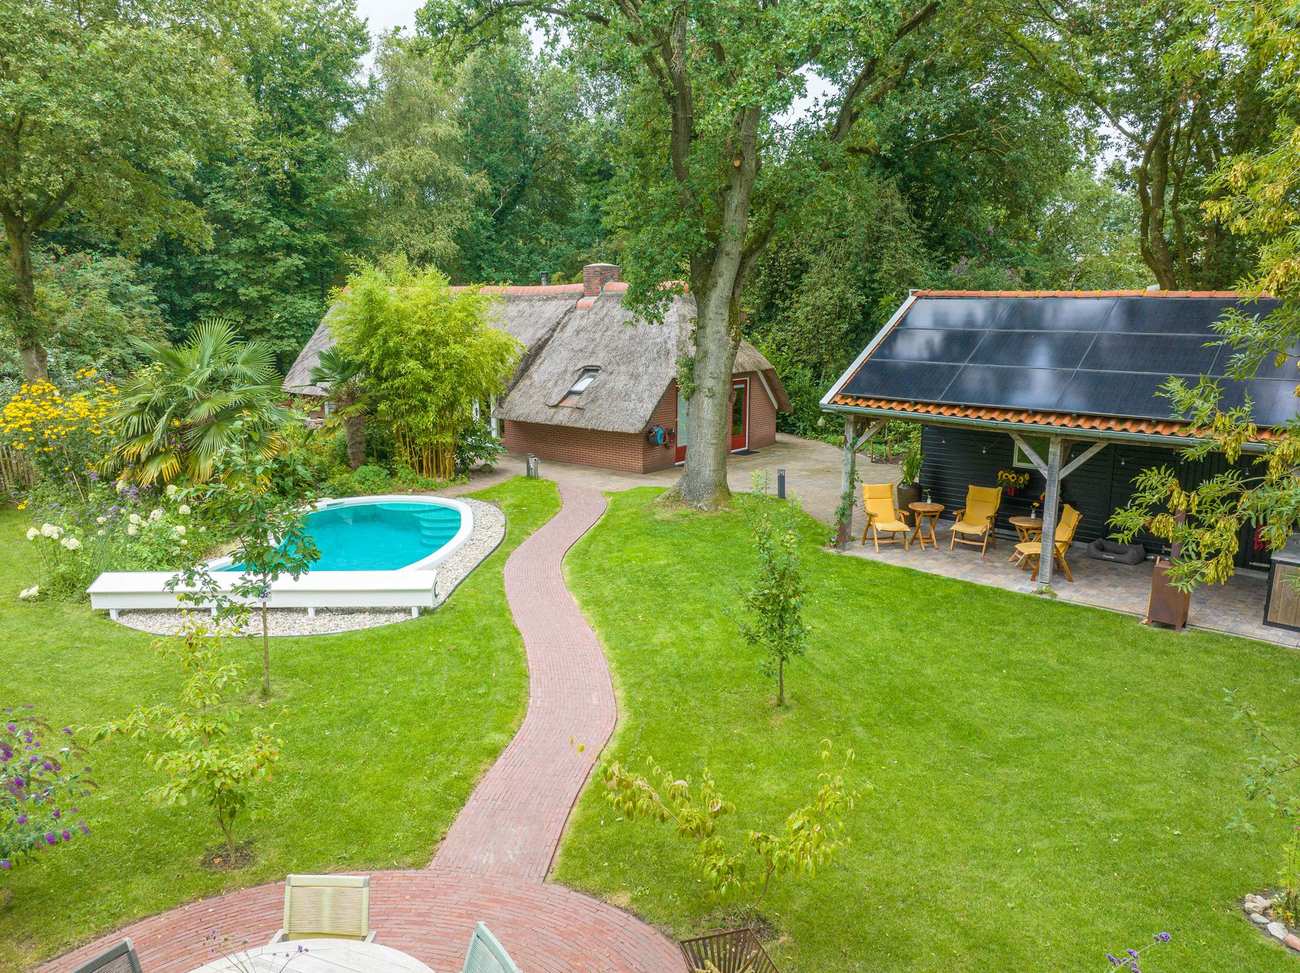 Te koop in Drenthe: rietgedekte woonboerderij met verwarmd zwembad, buitendouche en eigen sauna